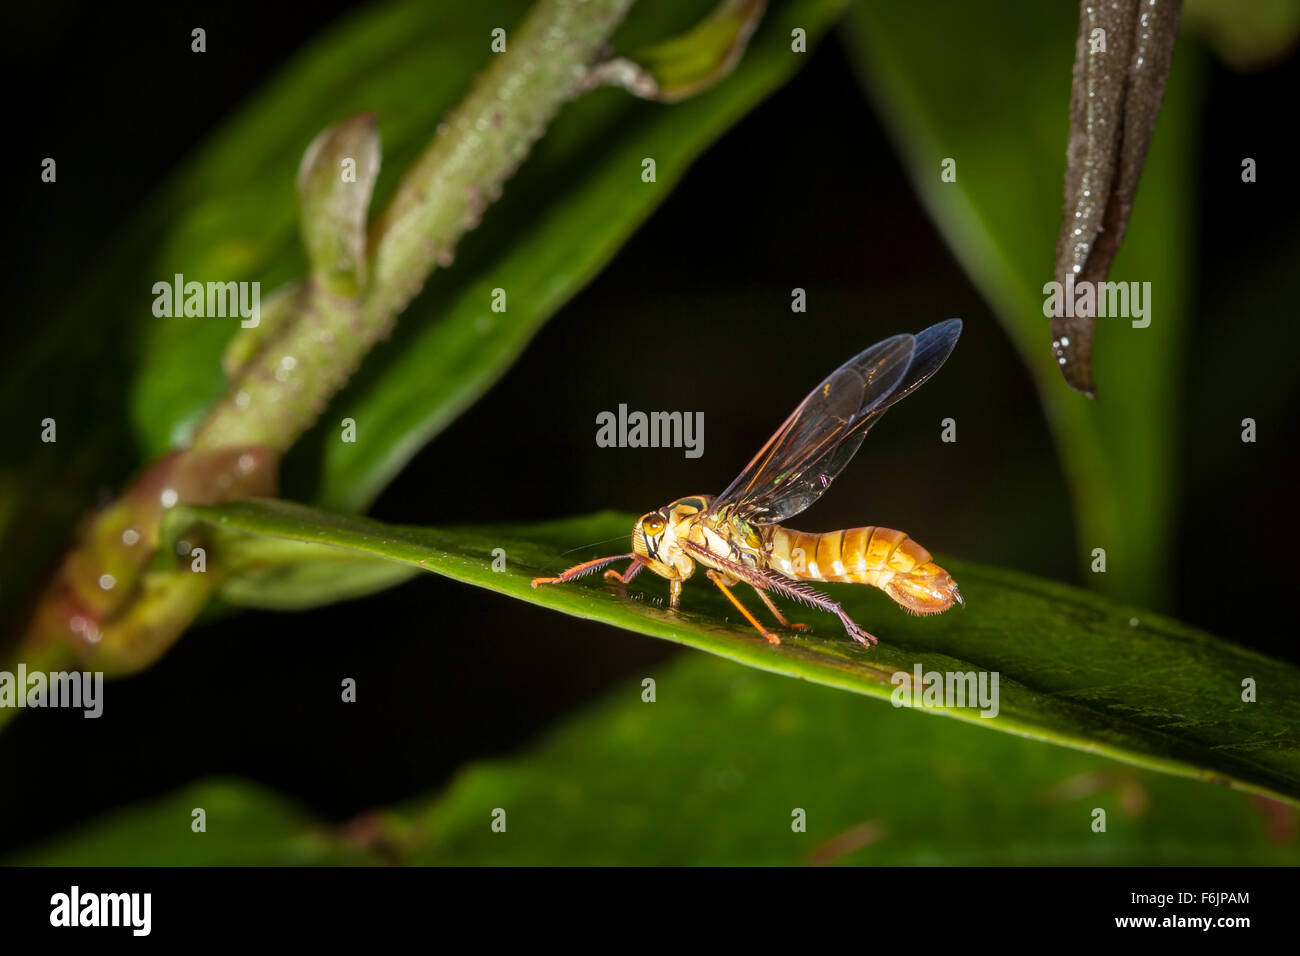 Que la cicadelle ressemble fortement à une guêpe. C'est un fantastique exemple de Batesian mimétisme. Banque D'Images